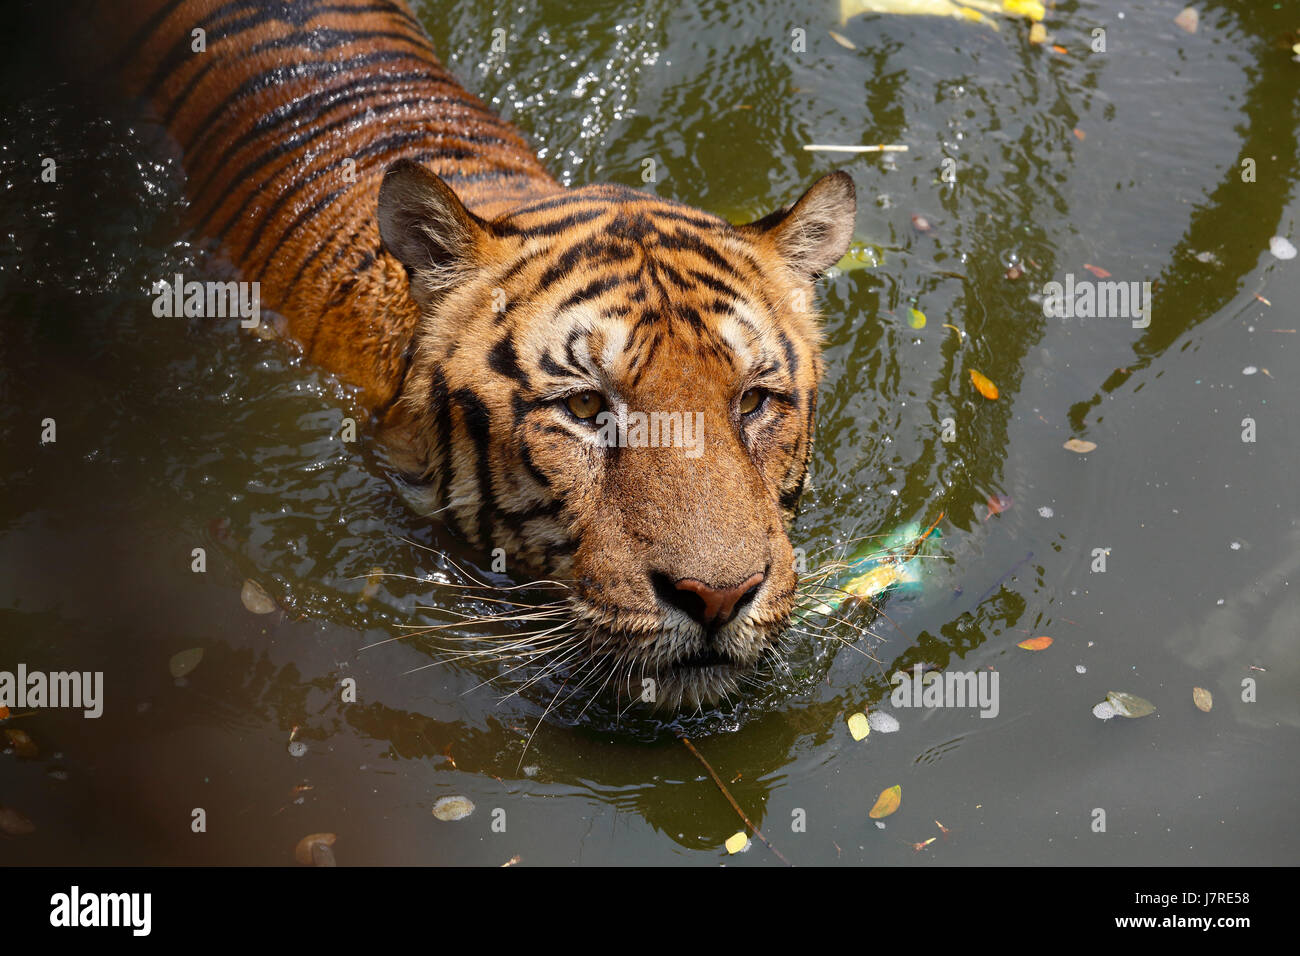 A Royal Bengal Tiger at Dhaka Zoo takes bath to beat the summer heat. Dhaka, Bangladesh Stock Photo